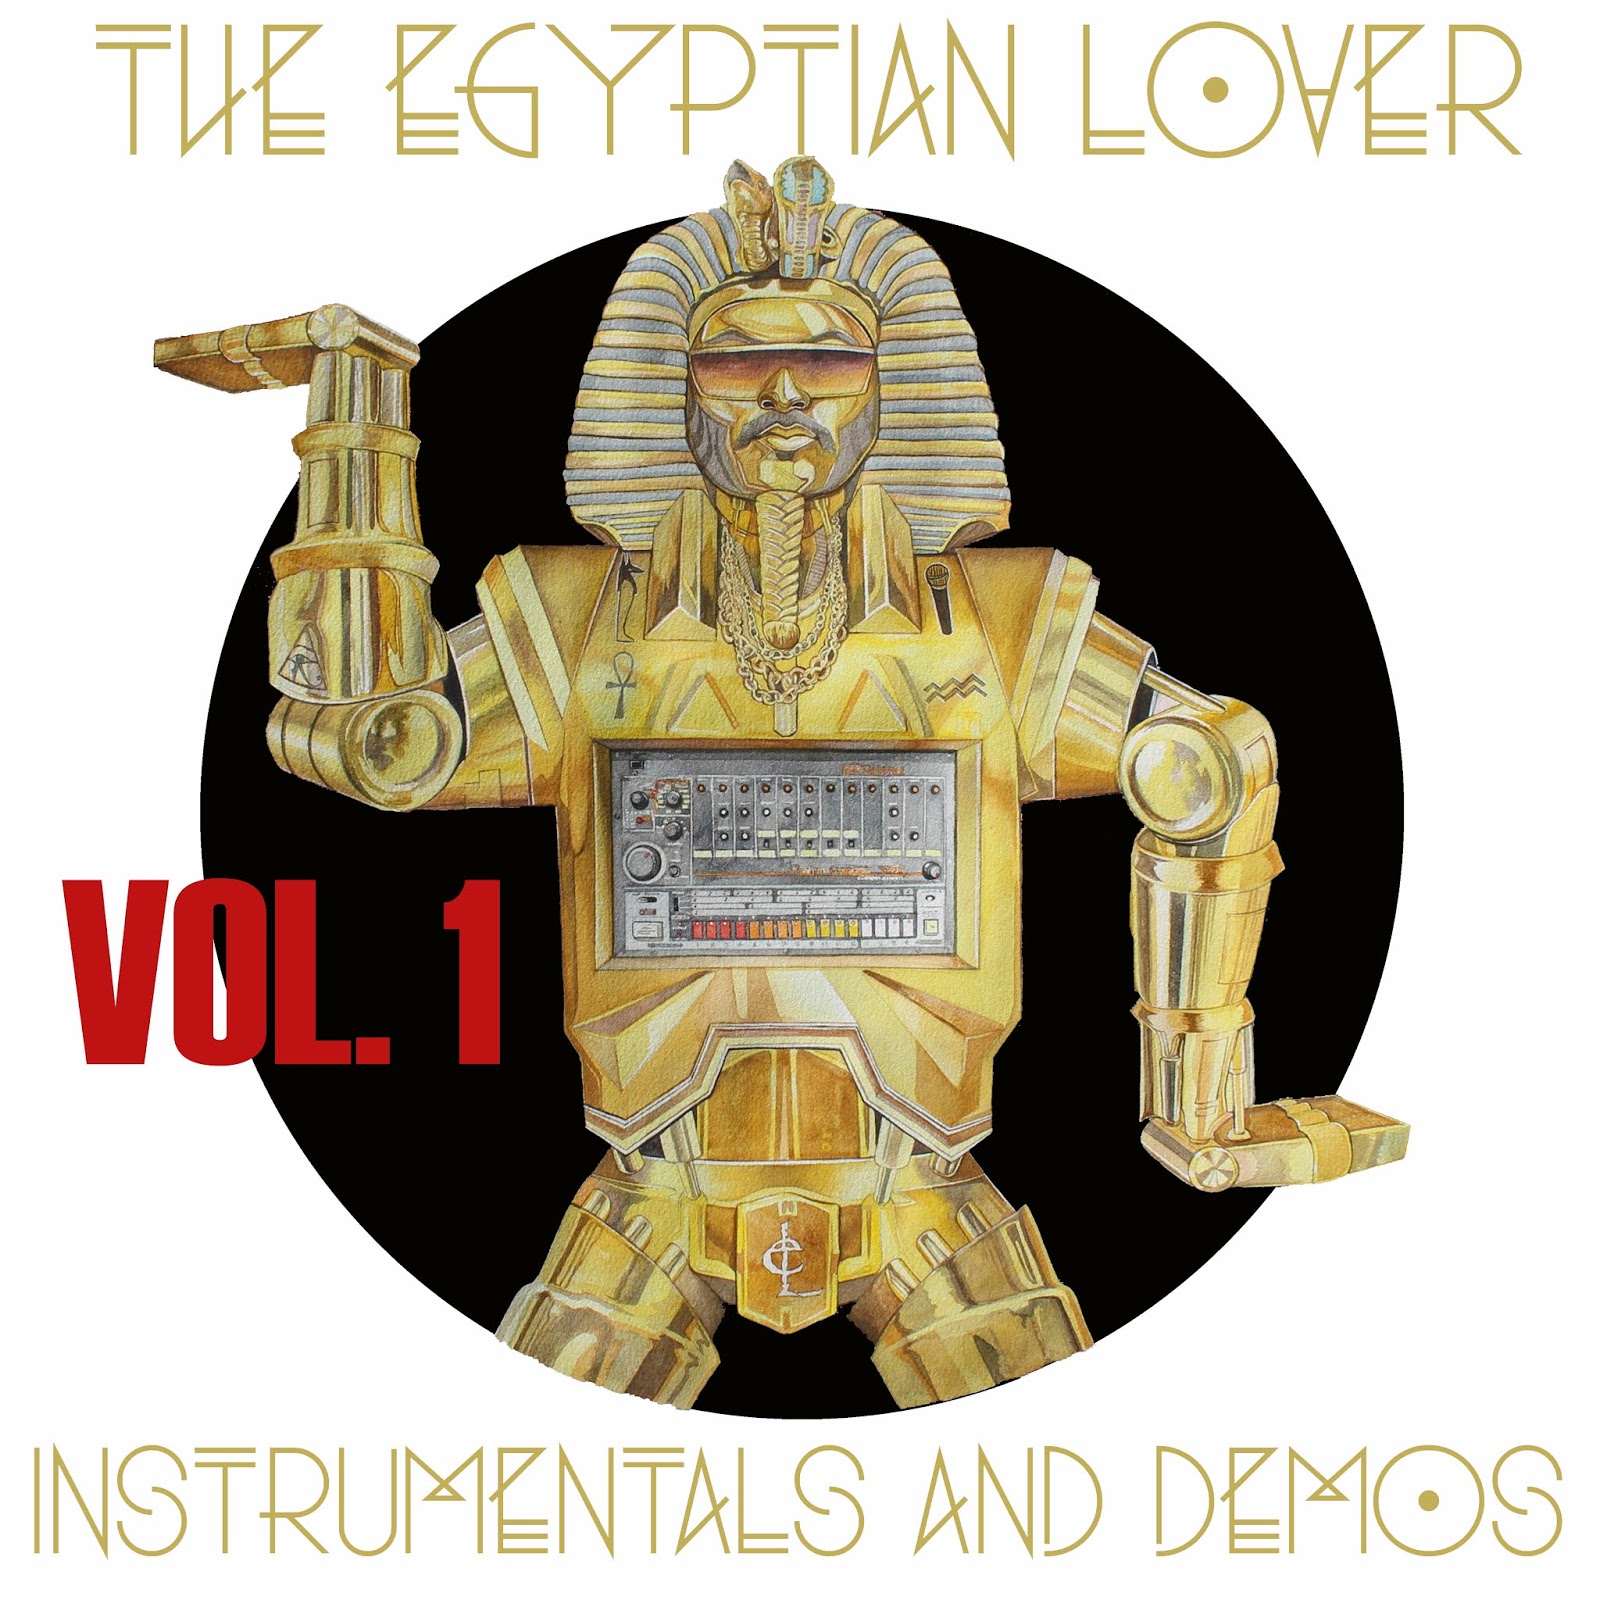 2017 flac. The Egyptian lover 1986. Egyptian lover. The Egyptian lover - one track Mind. The Egyptian lover 1986 album.